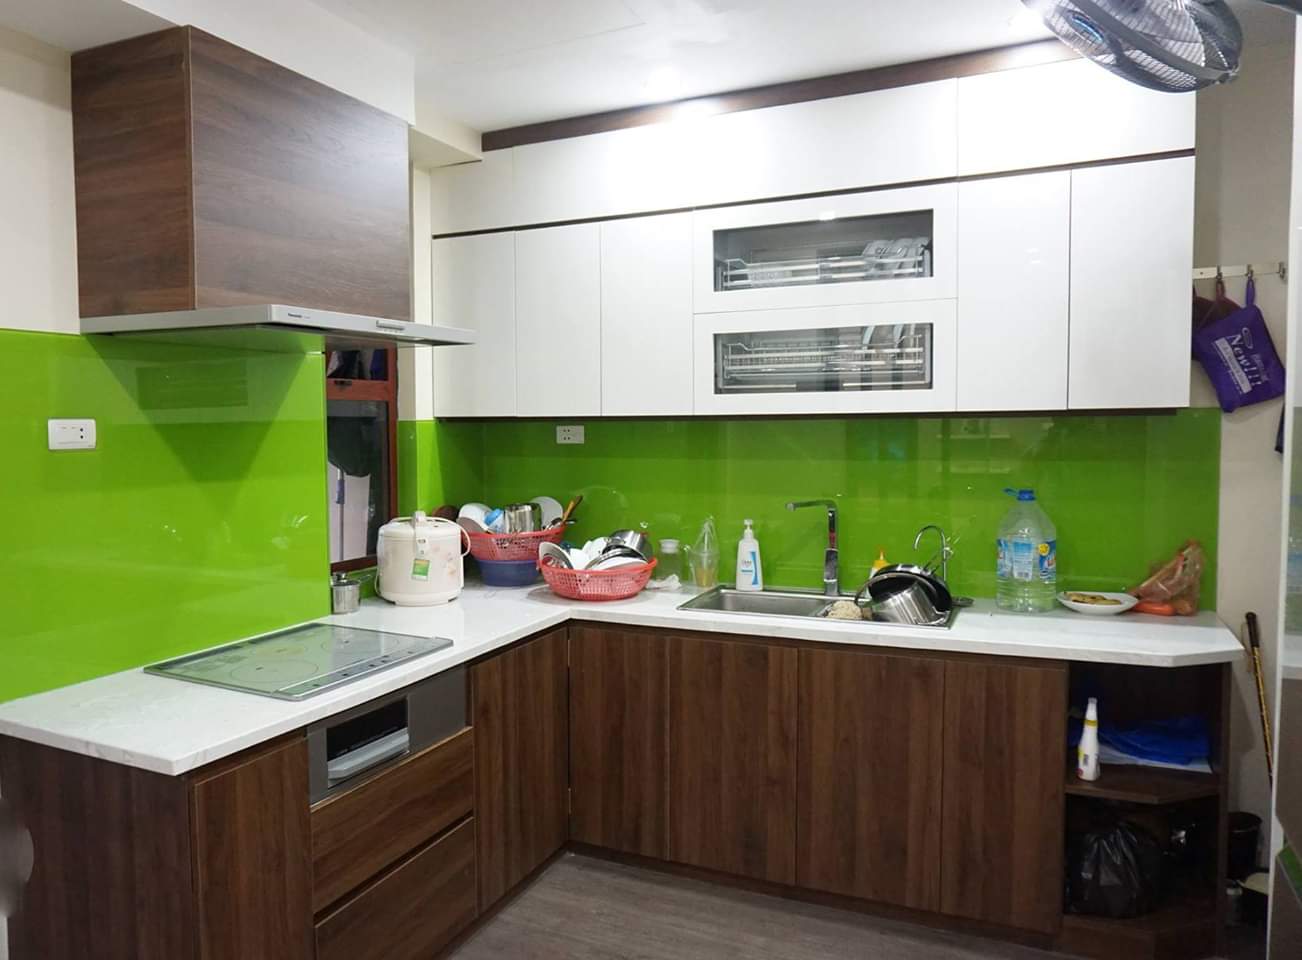 Tủ bếp Melamine trắng kết hợp màu vân gỗ ấm cúng, hiện đại kính bếp màu xanh làm điểm nhấn